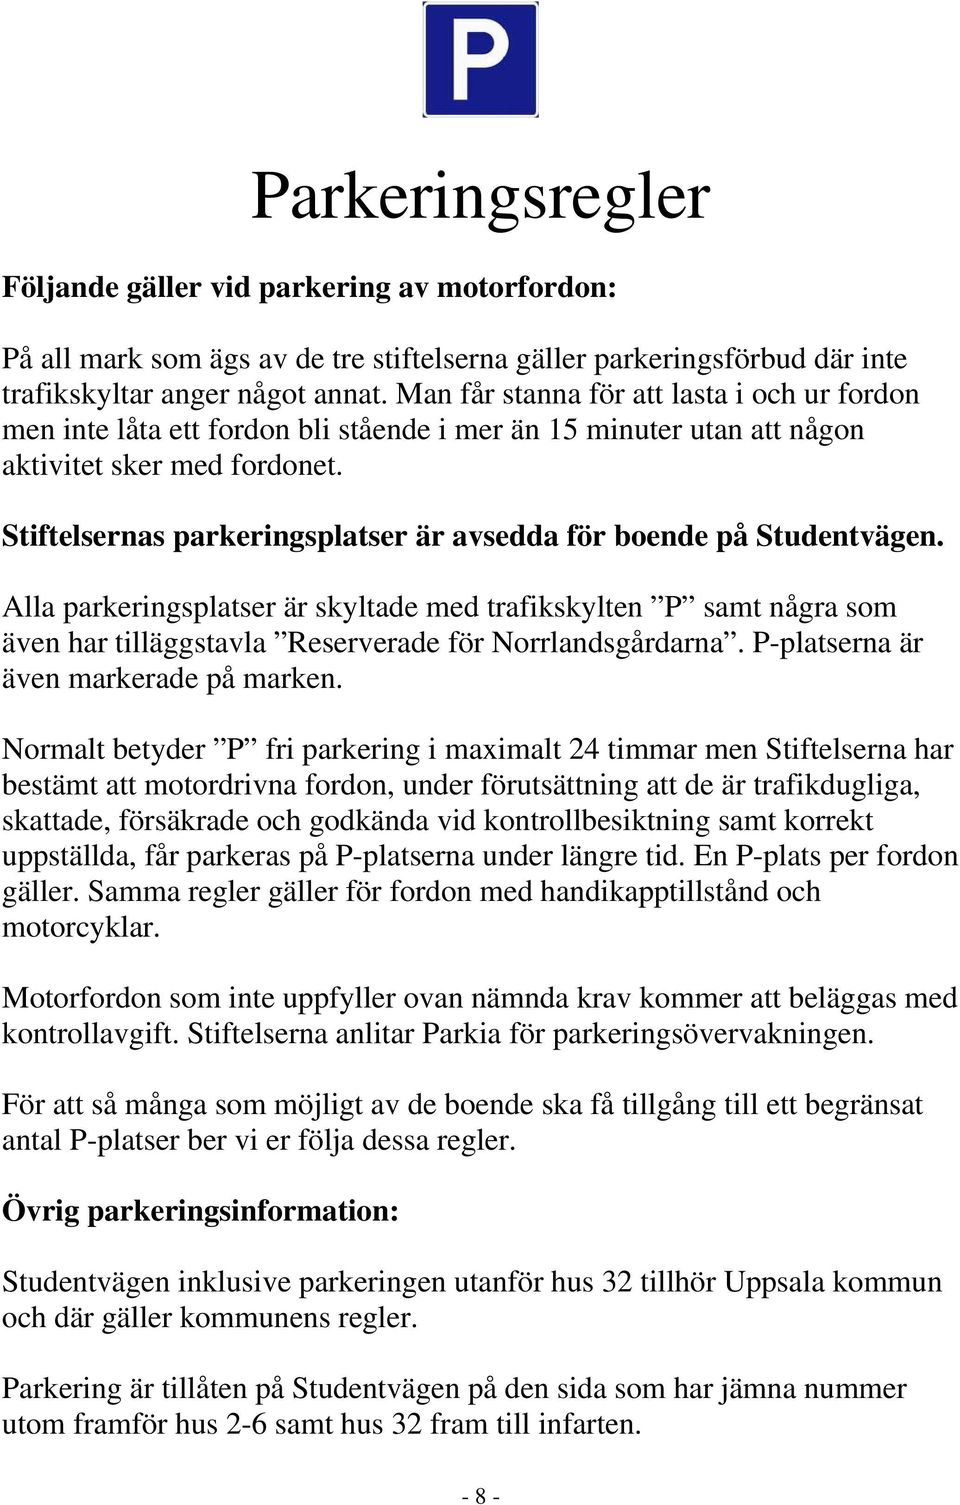 Stiftelsernas parkeringsplatser är avsedda för boende på Studentvägen. Alla parkeringsplatser är skyltade med trafikskylten P samt några som även har tilläggstavla Reserverade för Norrlandsgårdarna.